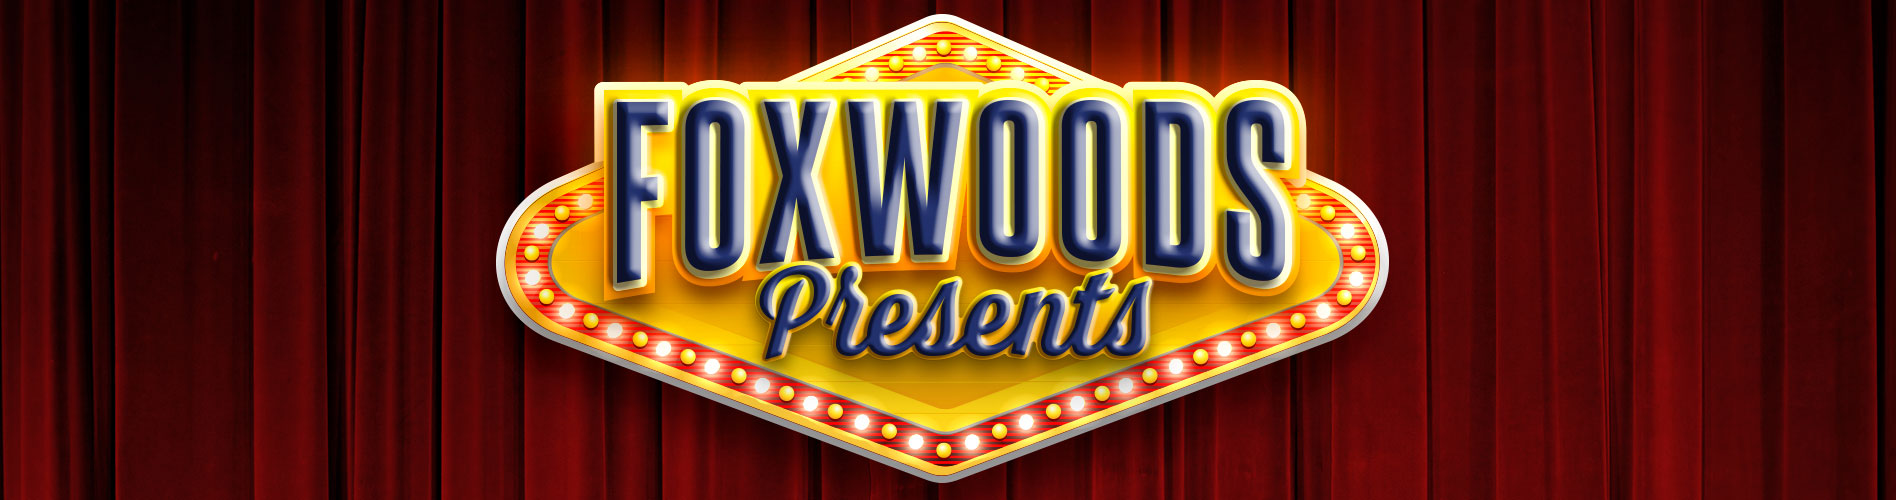 Foxwoods-Presents.jpg